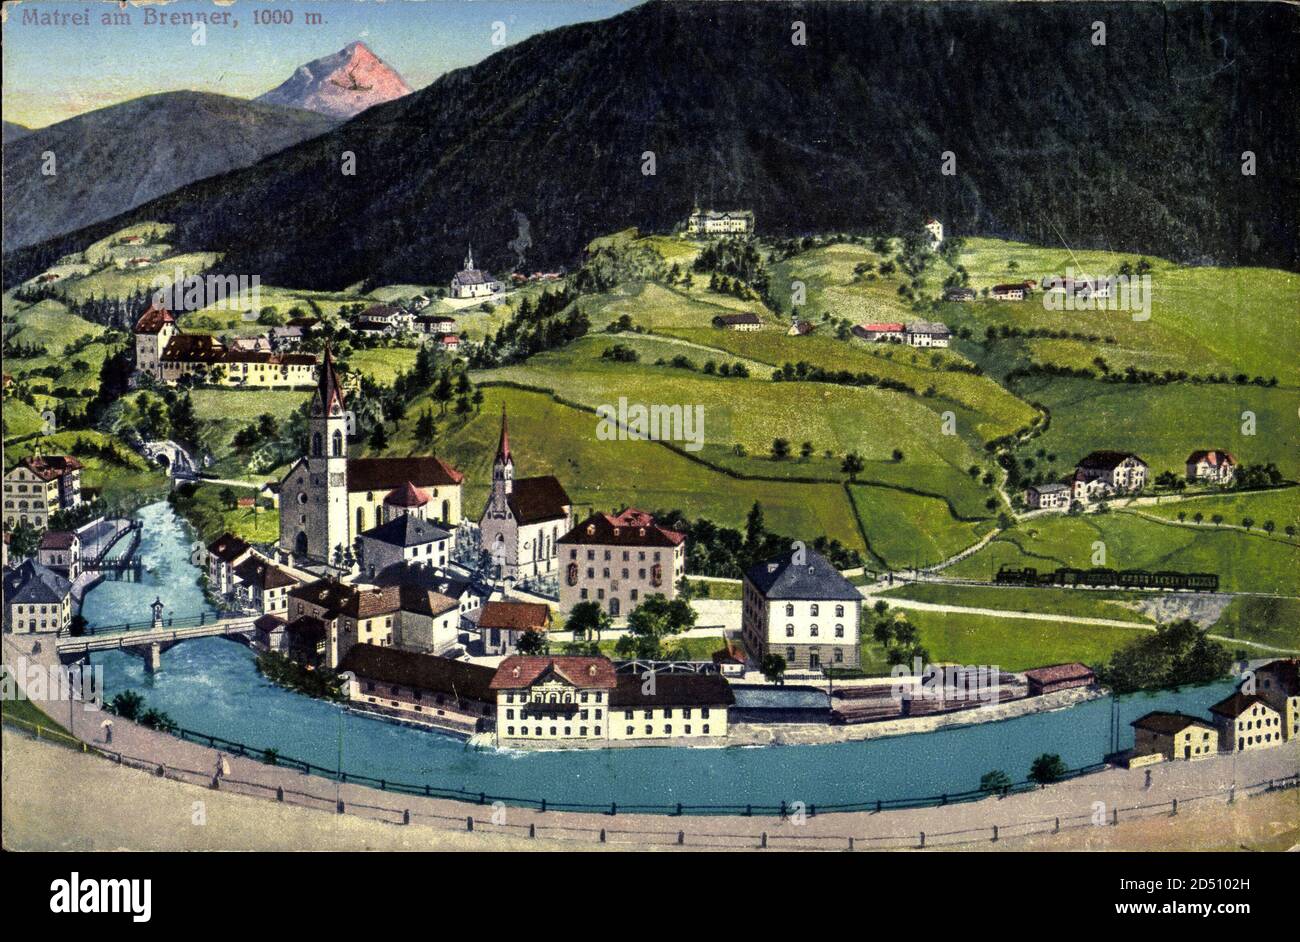 Matrei am Brenner Tirol, Panoramablick auf den Ort mit Kanalpartie | usage worldwide Stock Photo